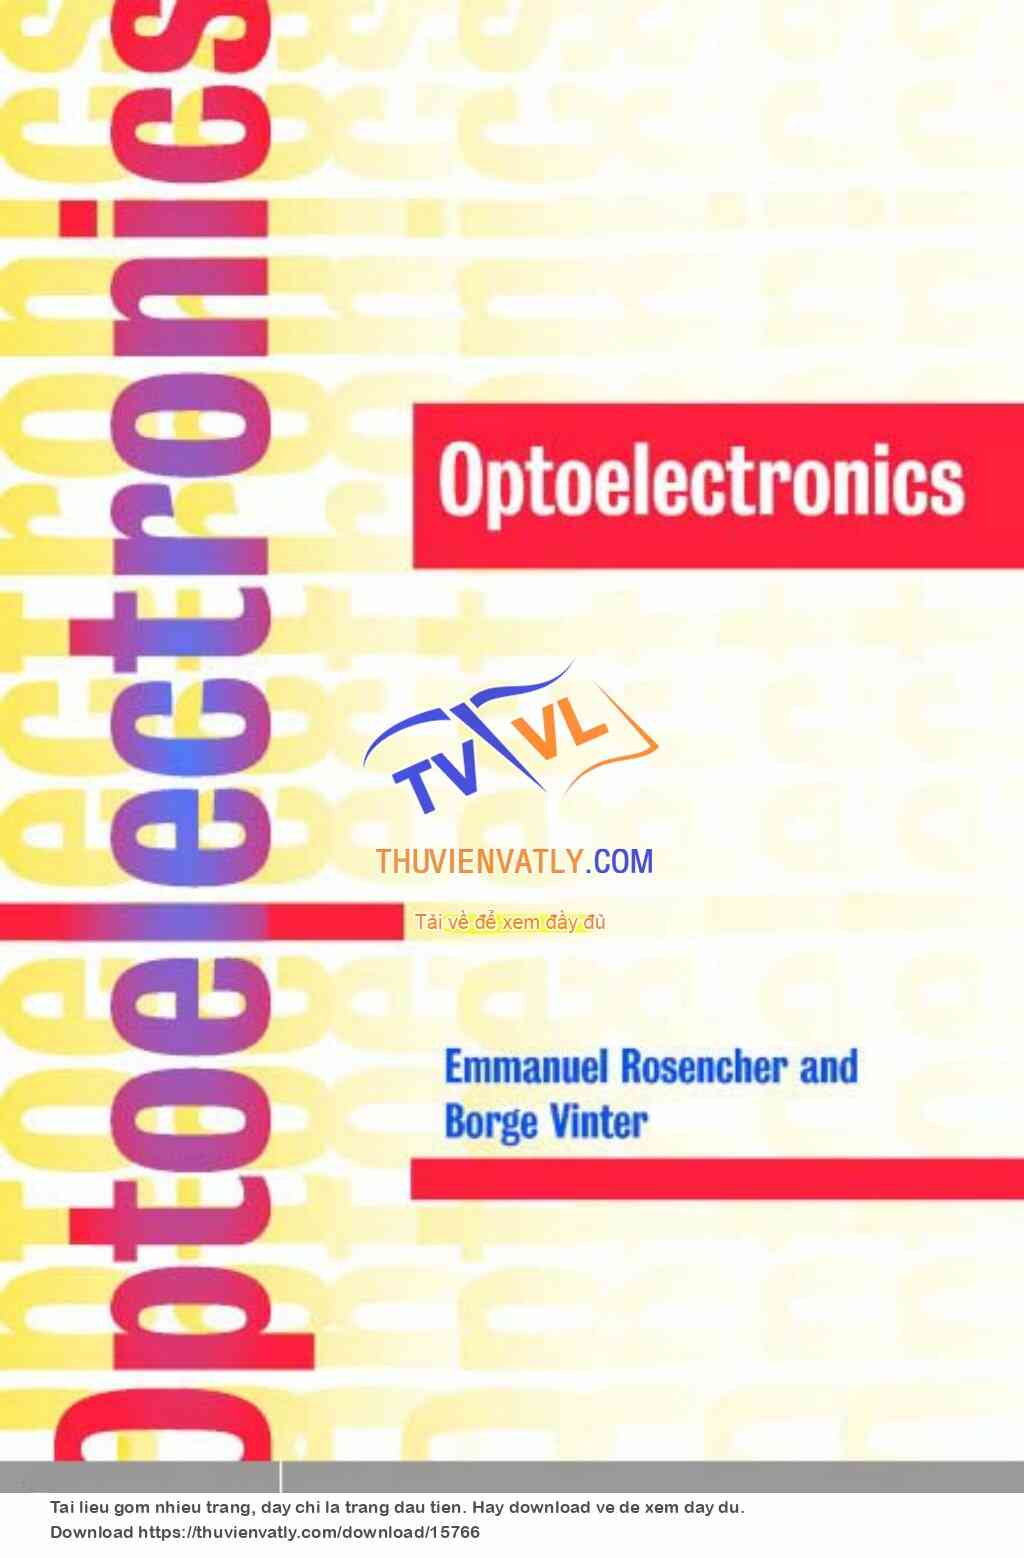 Optoelectronics (Quang điện tử)